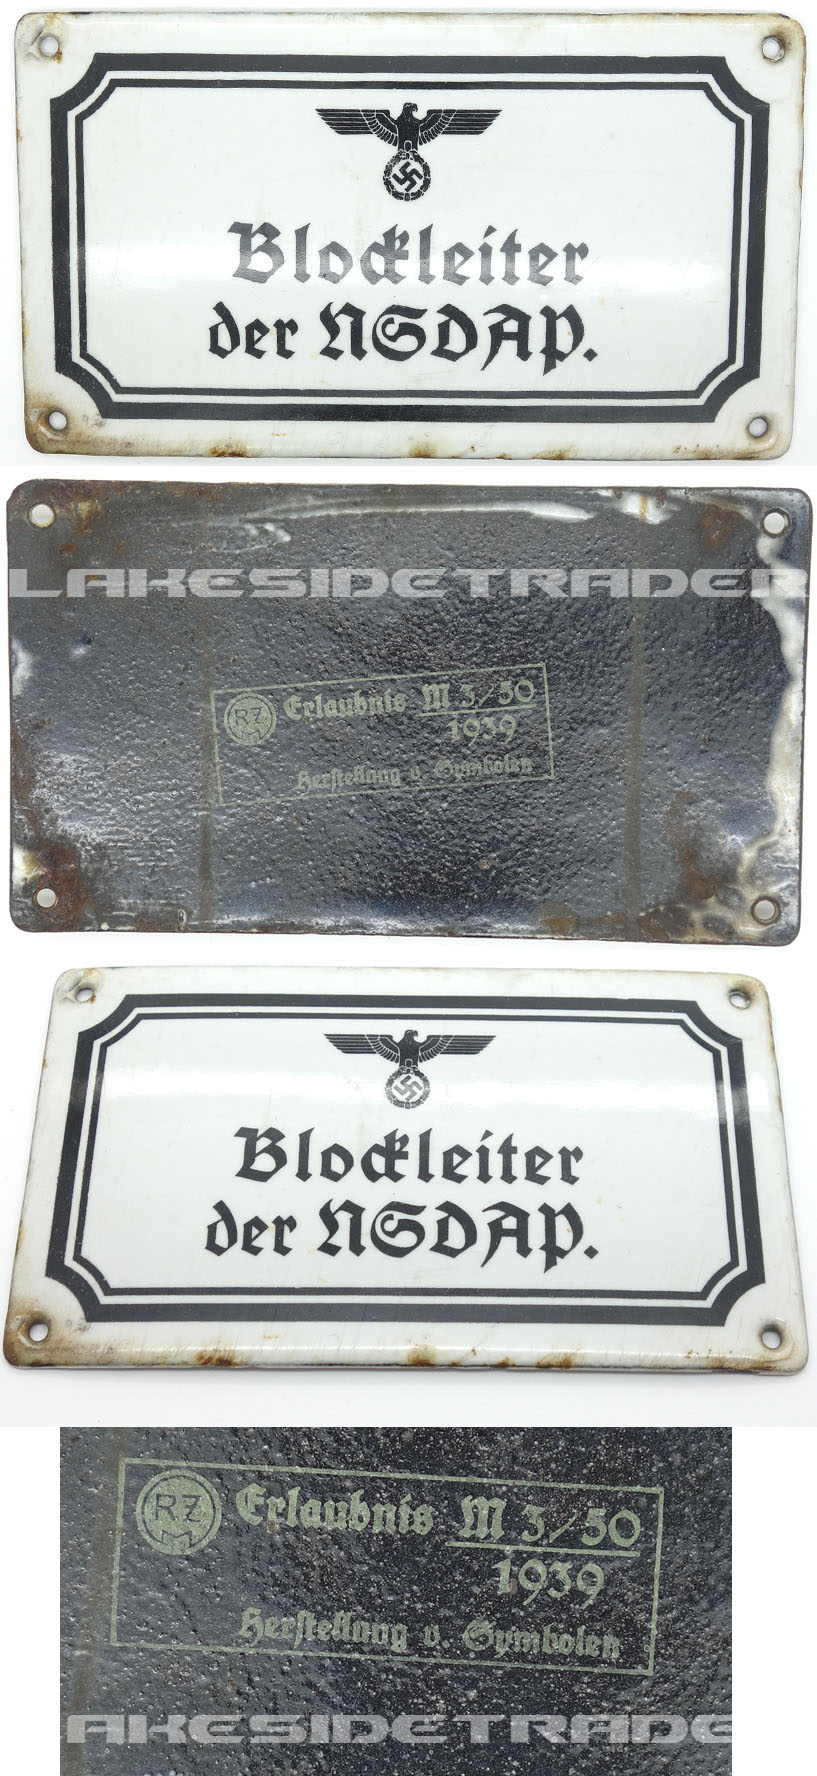 Blockleiter der NSDAP Sign